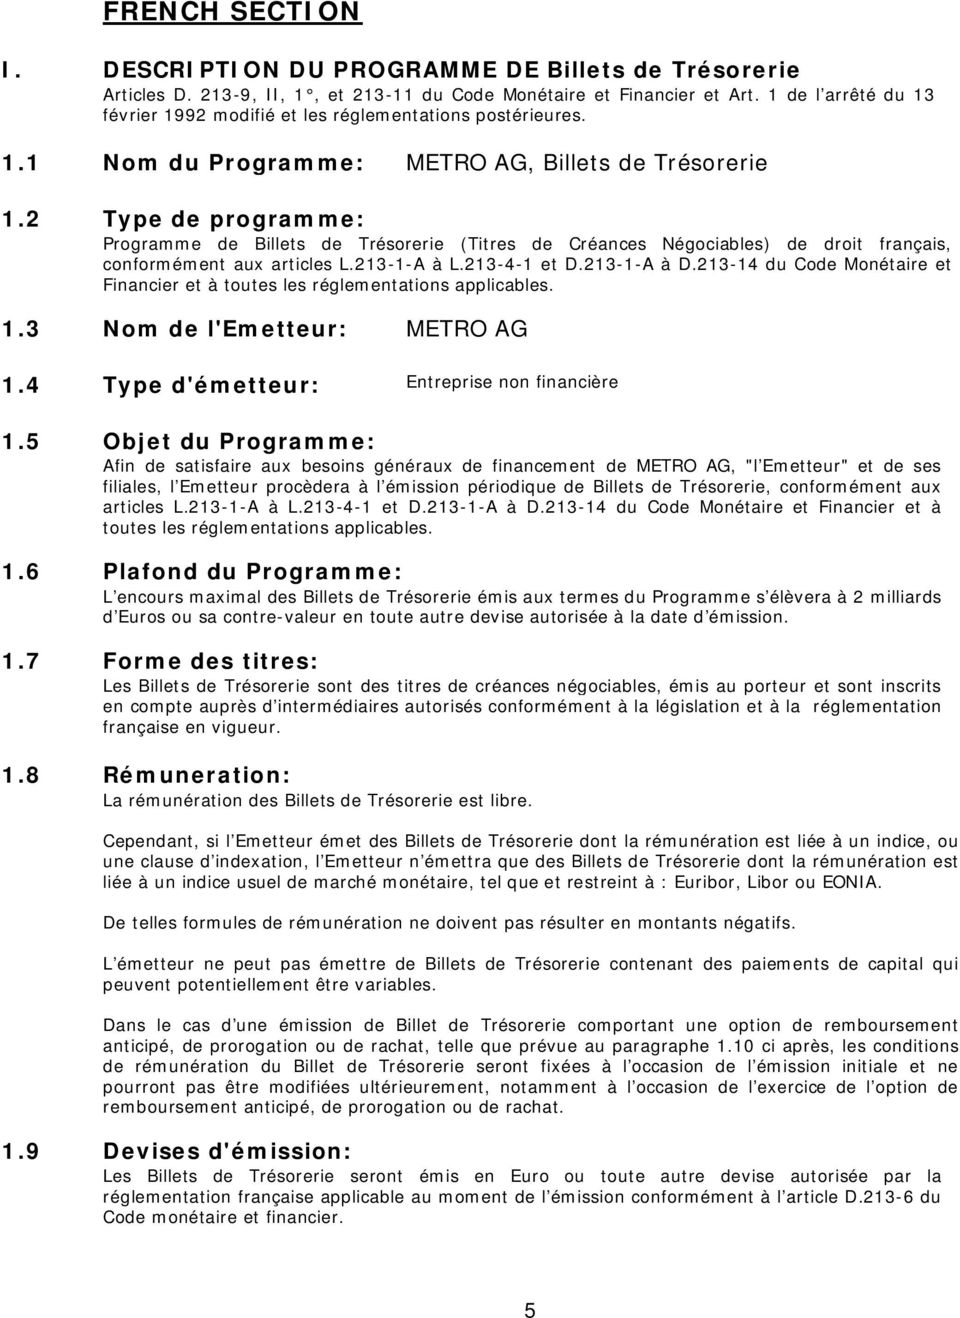 2 Type de programme: Programme de Billets de Trésorerie (Titres de Créances Négociables) de droit français, conformément aux articles L.213-1-A à L.213-4-1 et D.213-1-A à D.